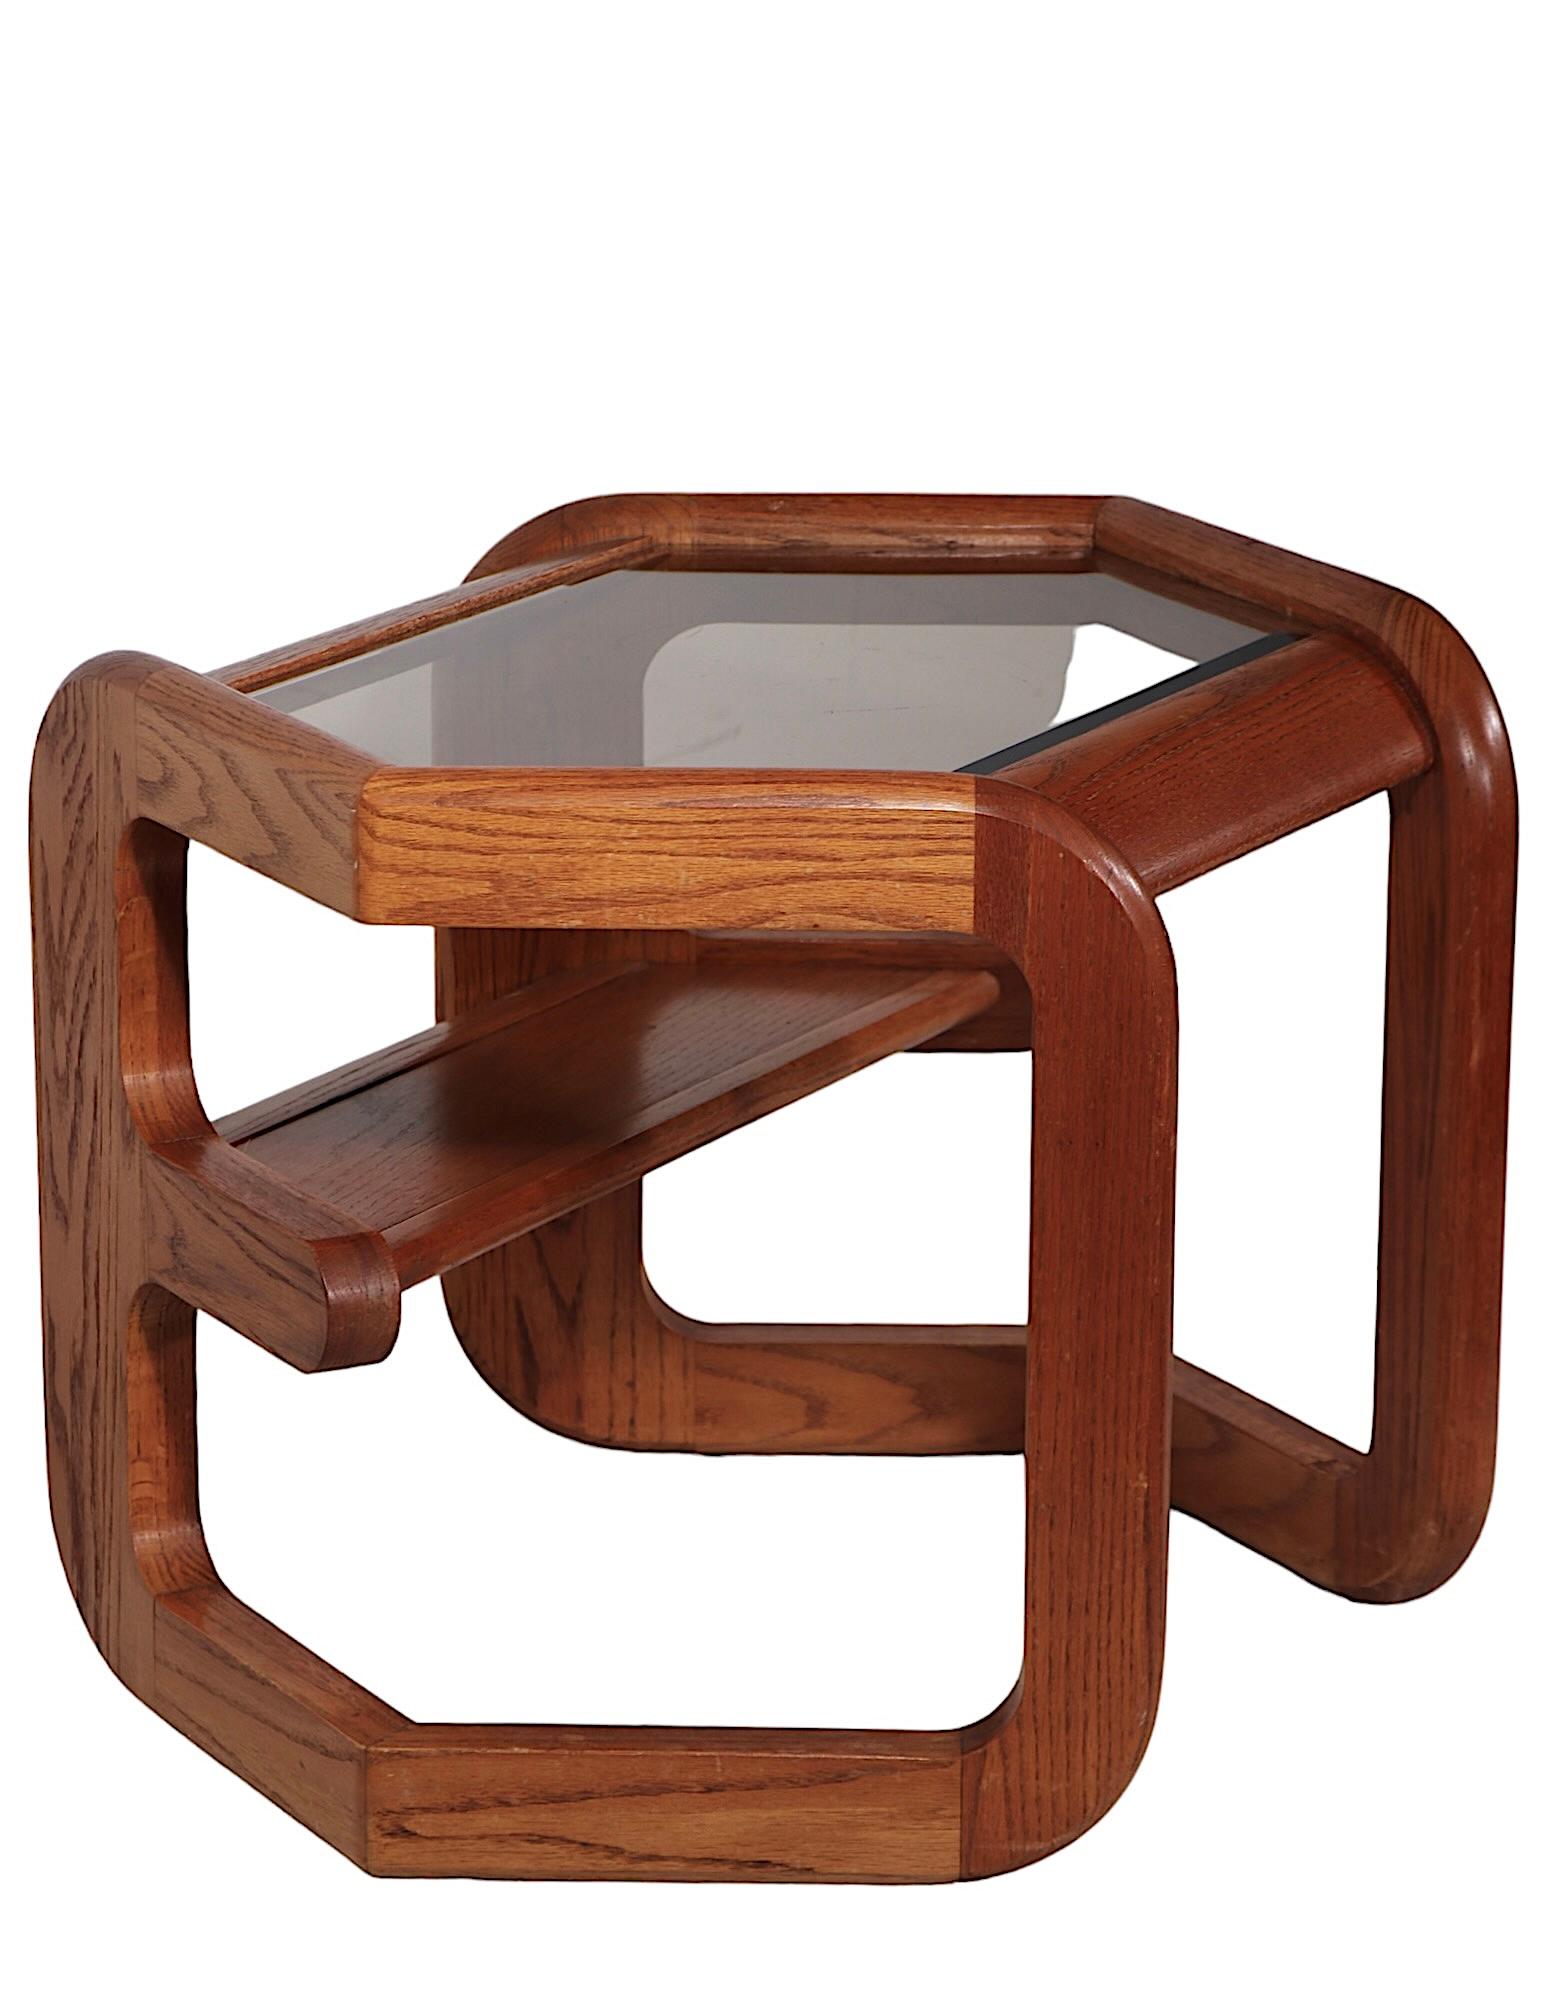 Exceptionnelle table d'appoint post-moderne, conçue par Lou Hodges pour Mersman, vers les années 1970. La table est dotée d'un  Cadre octogonal en chêne massif, avec un cadre biseauté et teinté.  plateau en verre. Cet exemplaire est en très bon